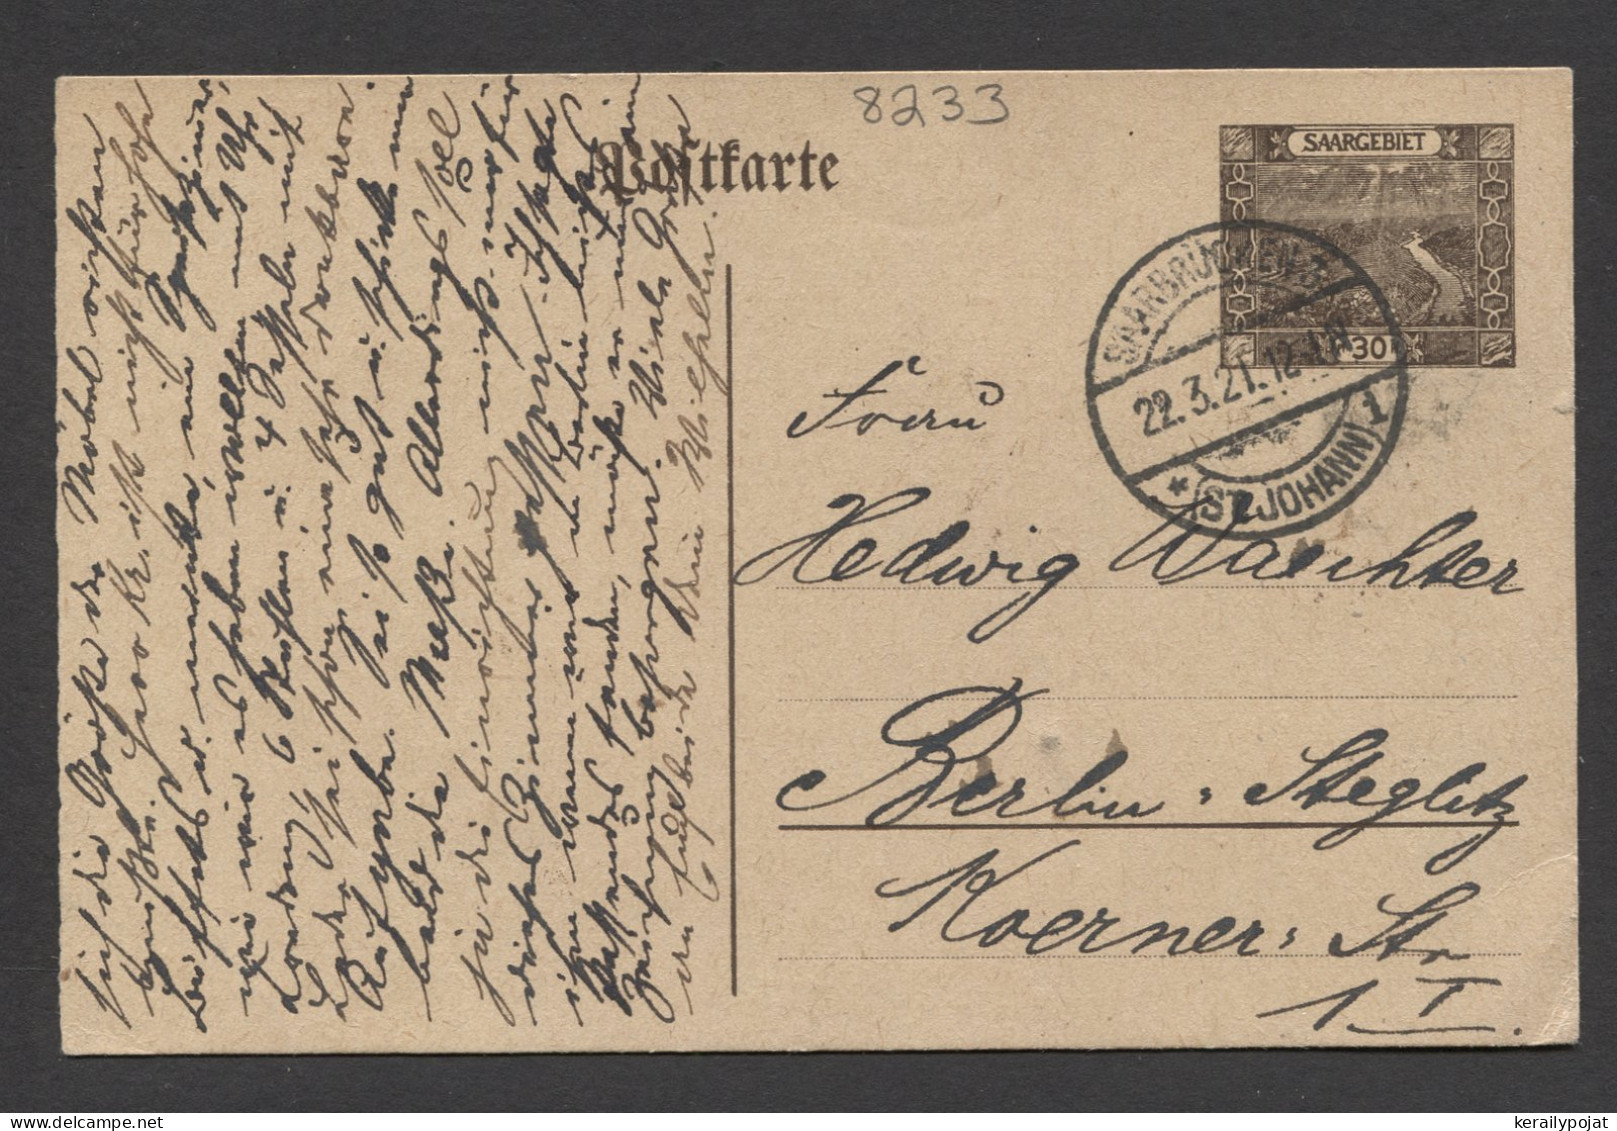 Saargebiet 1921 Saarbrucken 30c Stationery Card To Berlin__(8233) - Postal Stationery